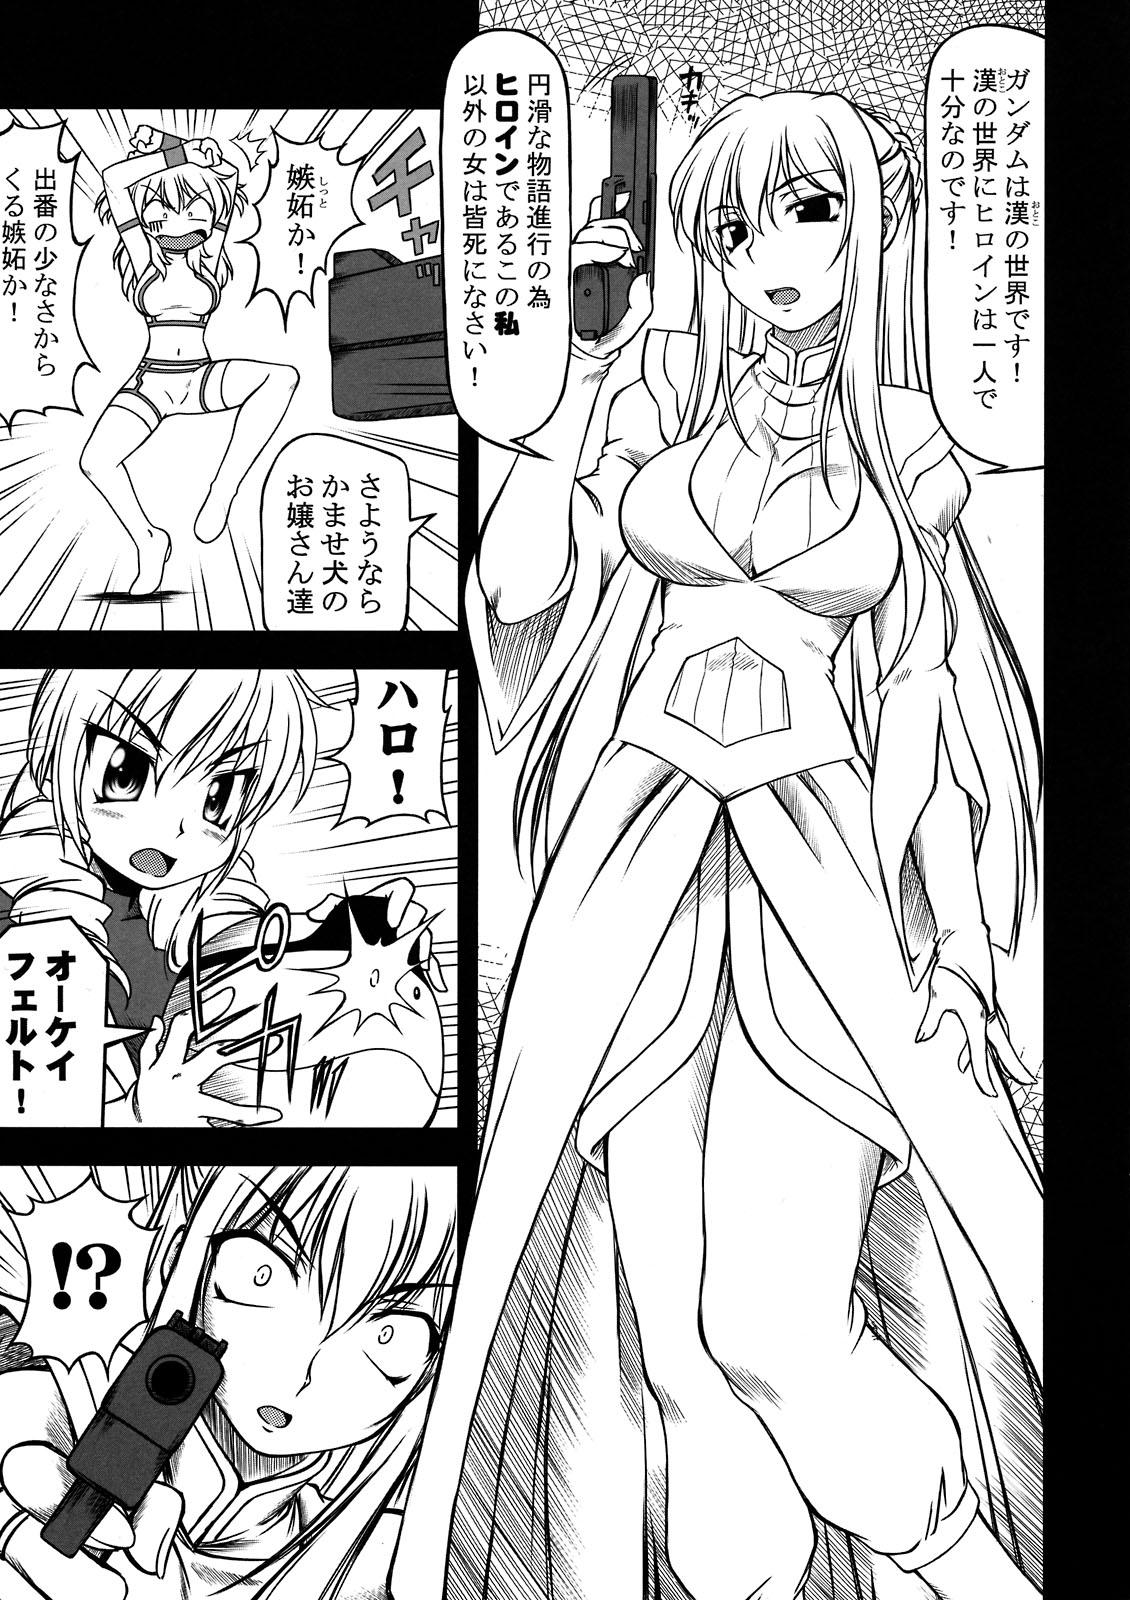 Classy Hokyuu Busshi 00 - Gundam 00 Female Orgasm - Page 5